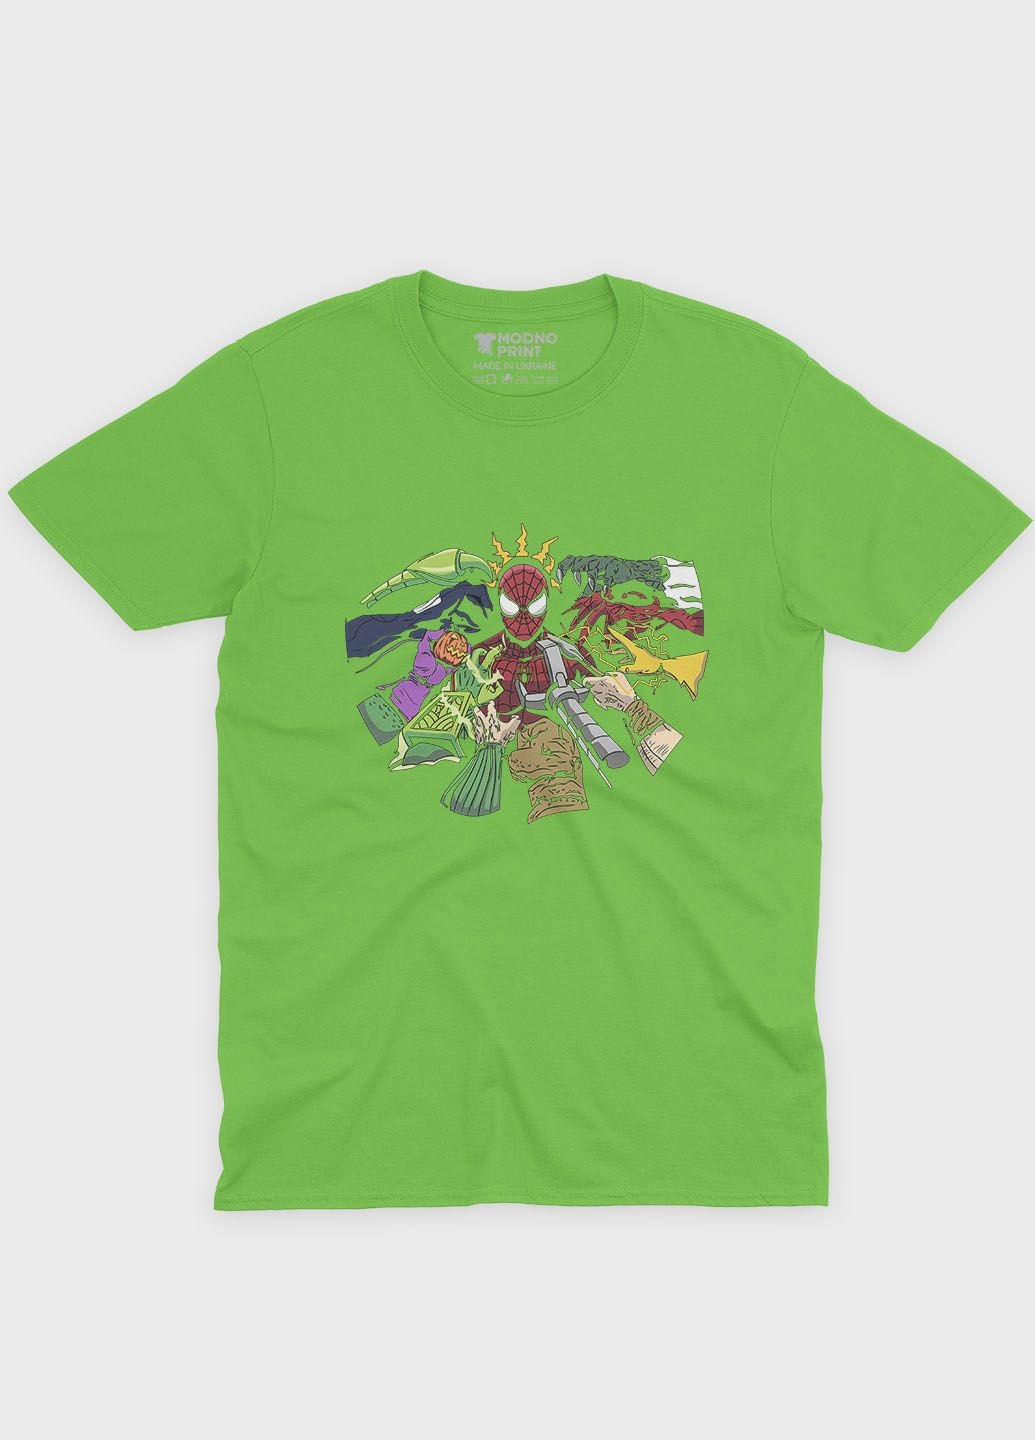 Салатова демісезонна футболка для хлопчика з принтом супергероя - людина-павук (ts001-1-kiw-006-014-014-b) Modno